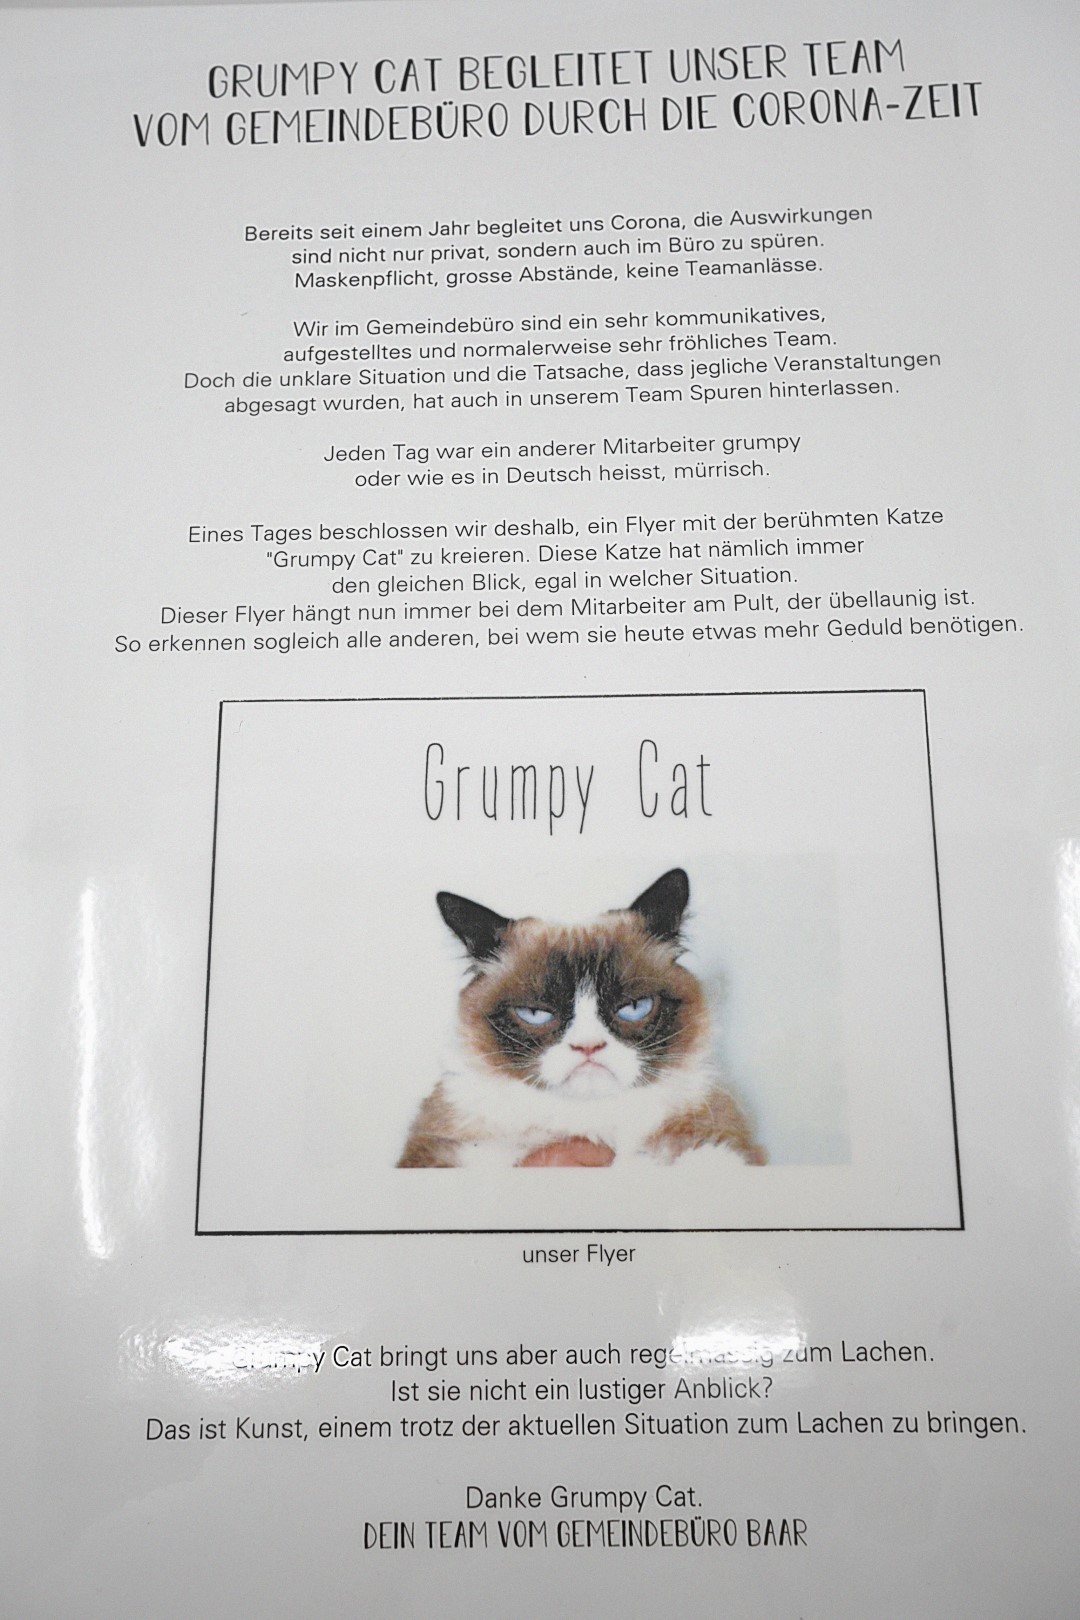 Werktitel: "Grumpy Cat"
Das Objekt bringt uns immer wieder zum Lachen. Jede*r Mitarbeiter*in des Gemeindebüros Baar hat eine eigene Definition von Kunst, jedoch bringt uns Grumpy Cat – auch in dieser schwierigen Situation – immer wieder zum Lachen: Das ist doch auch Kunst, oder?